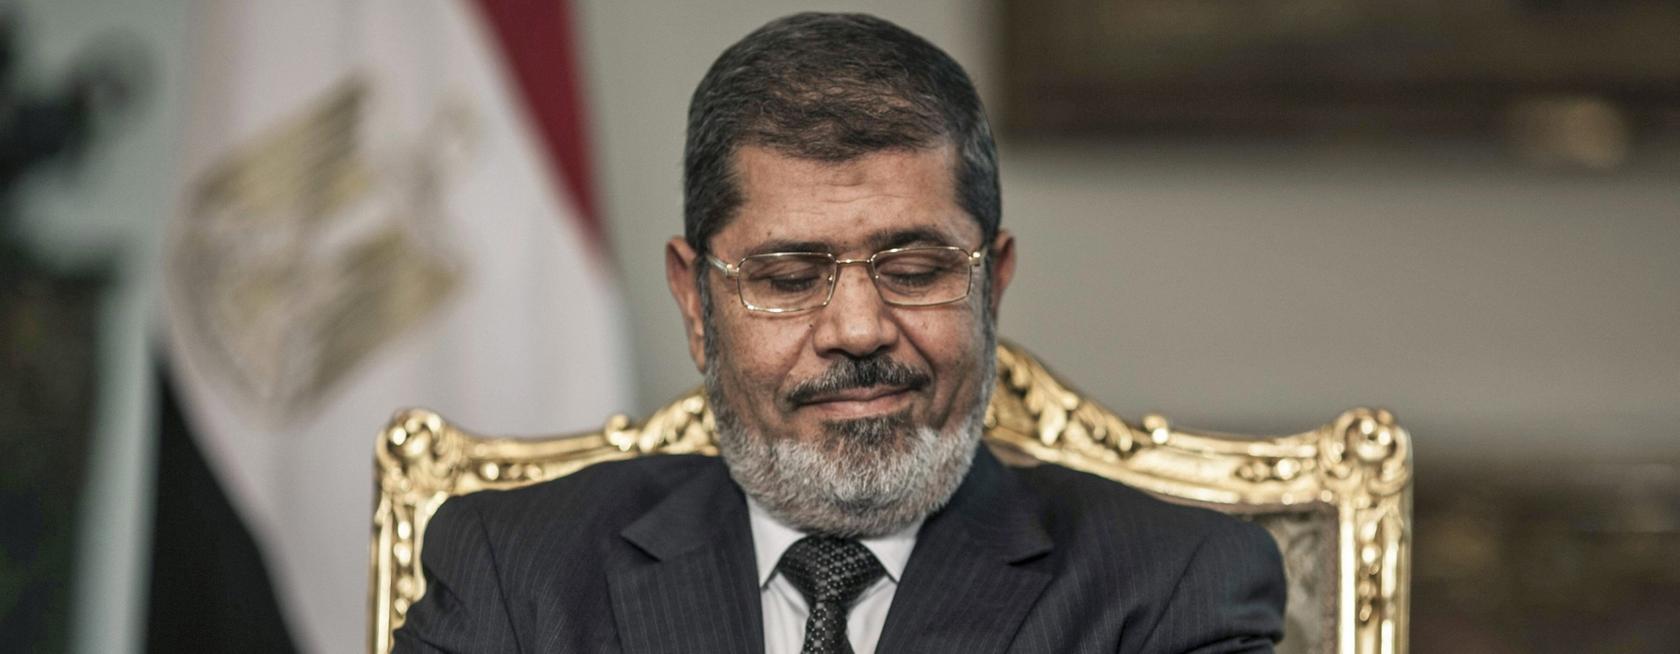 Immer wieder gab es Proteste gegen Mursi und seine Politik während seiner Amtszeit. Nun wurde der Islamist zu 20 Jahren Haft verurteilt.